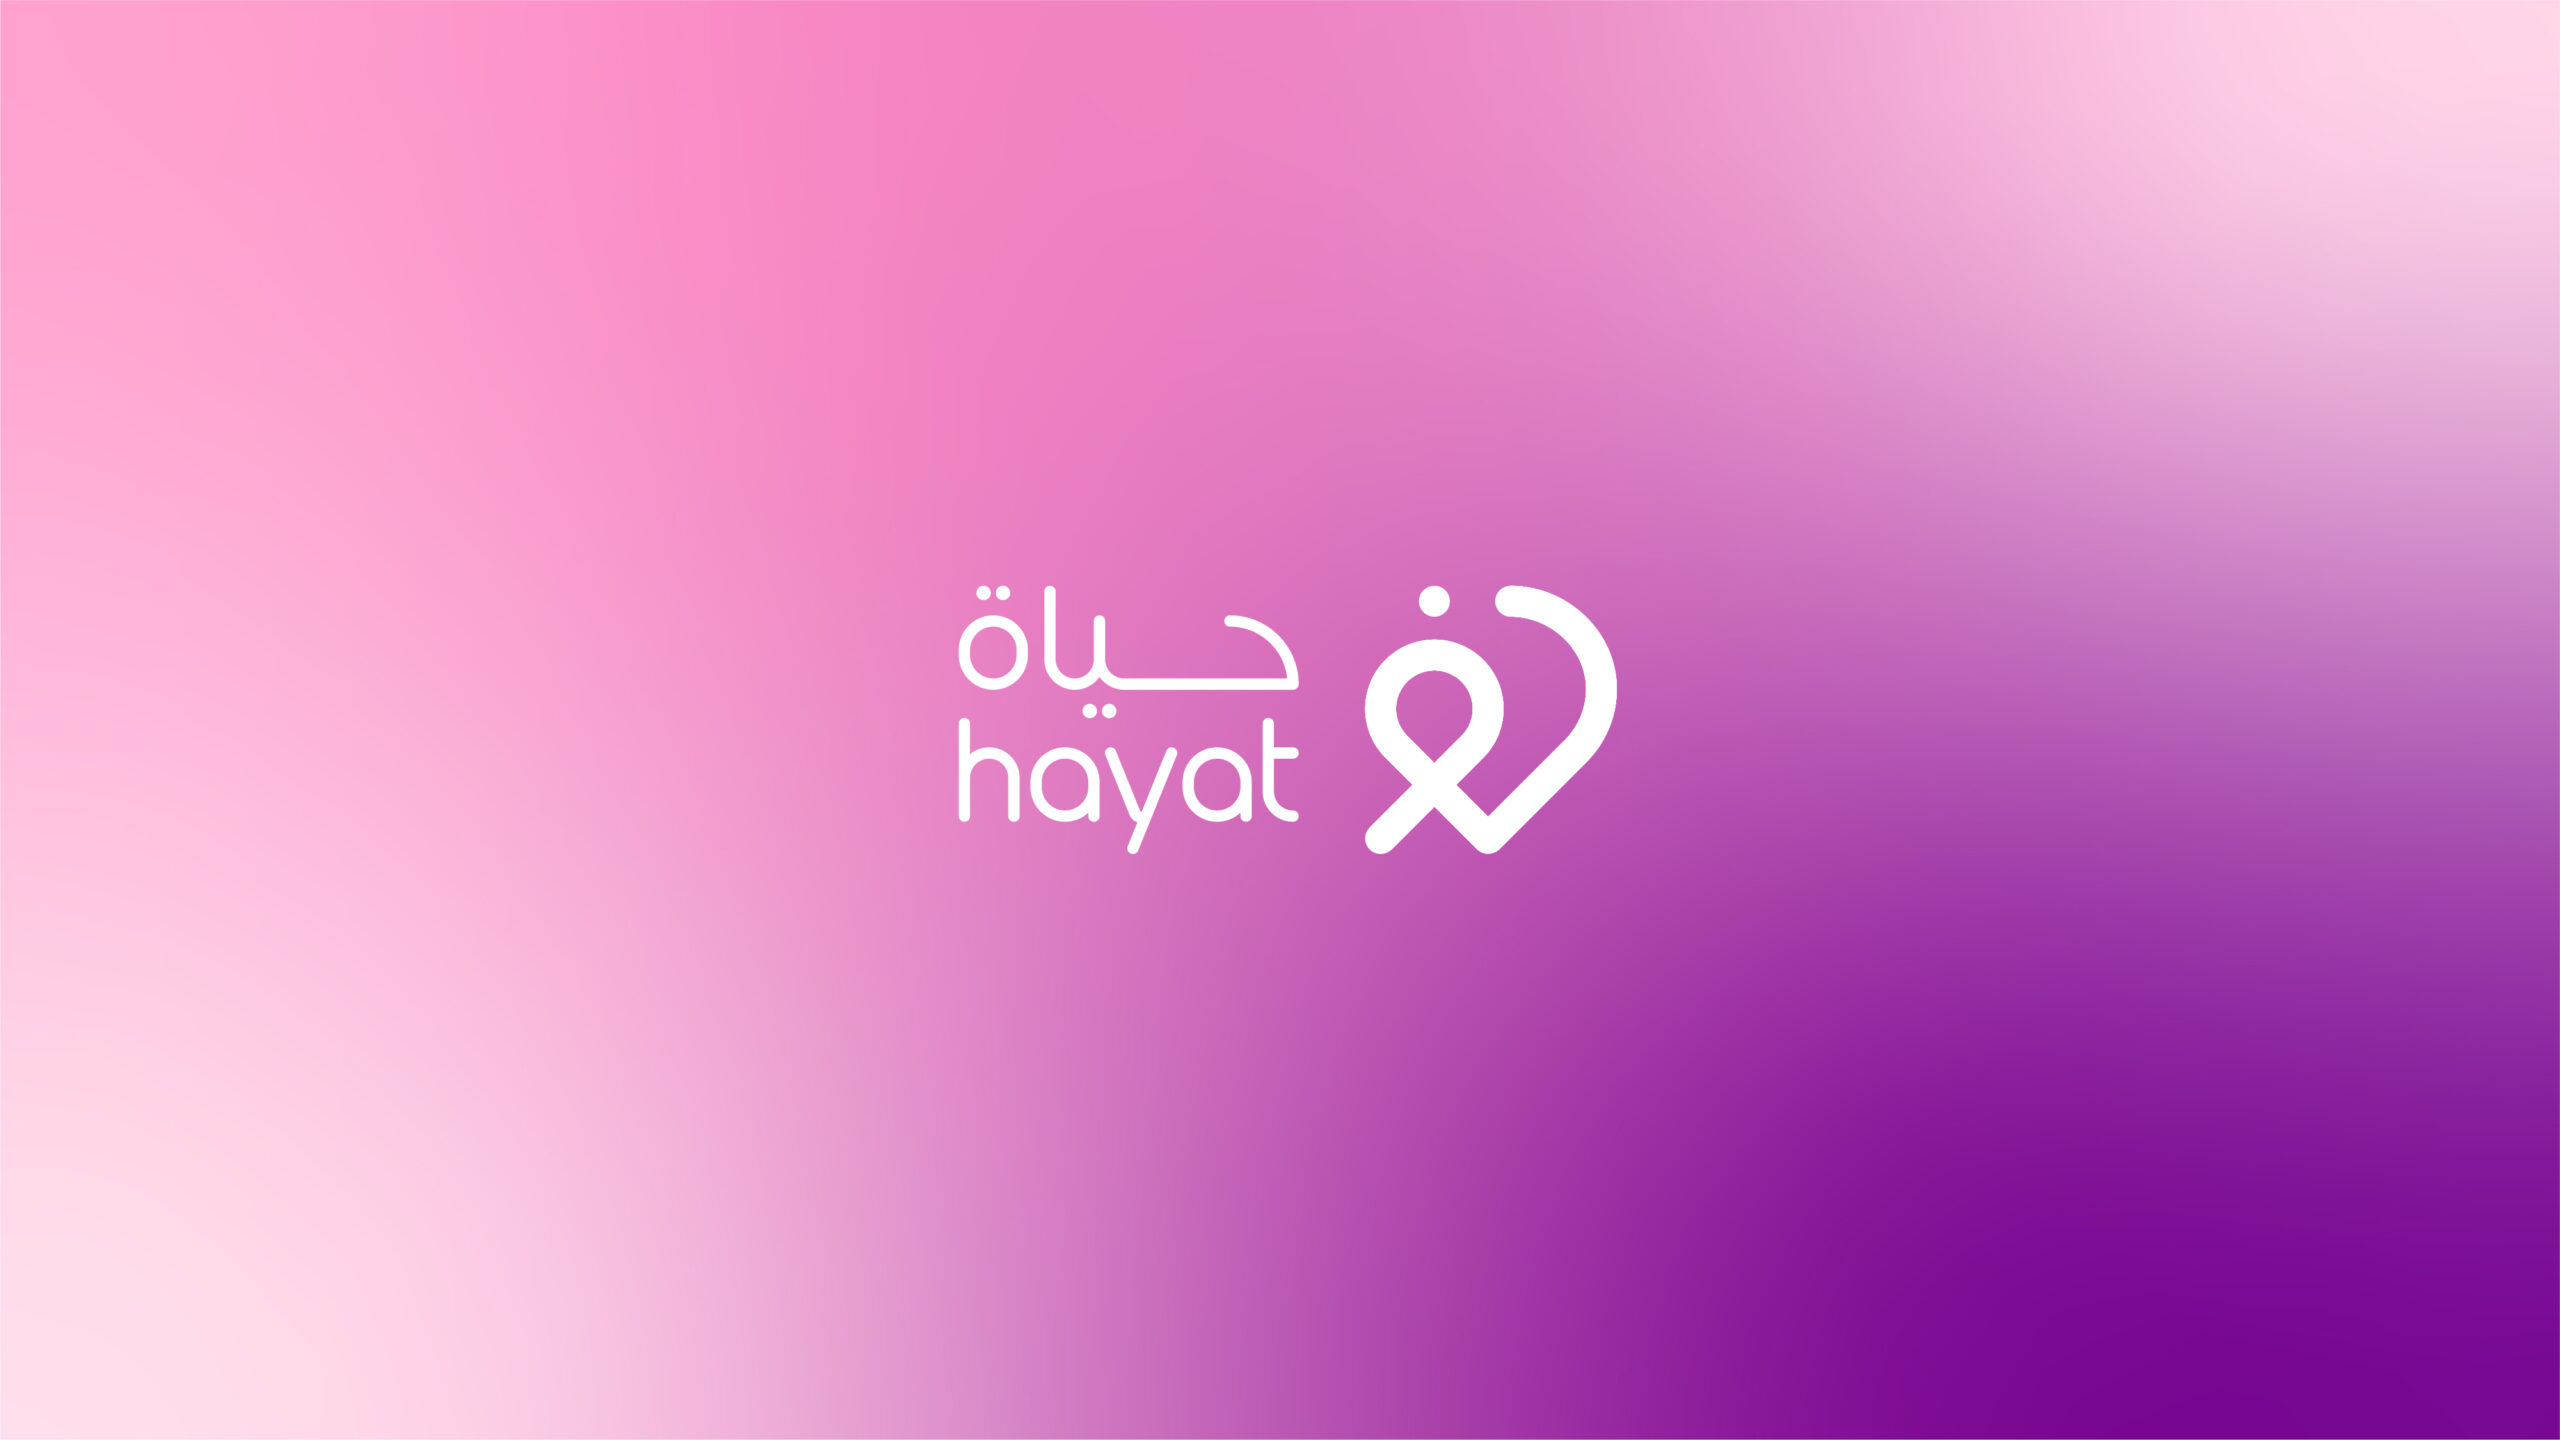 Hayat-App-Branding-By-Millimeter-Creative-Agency-01